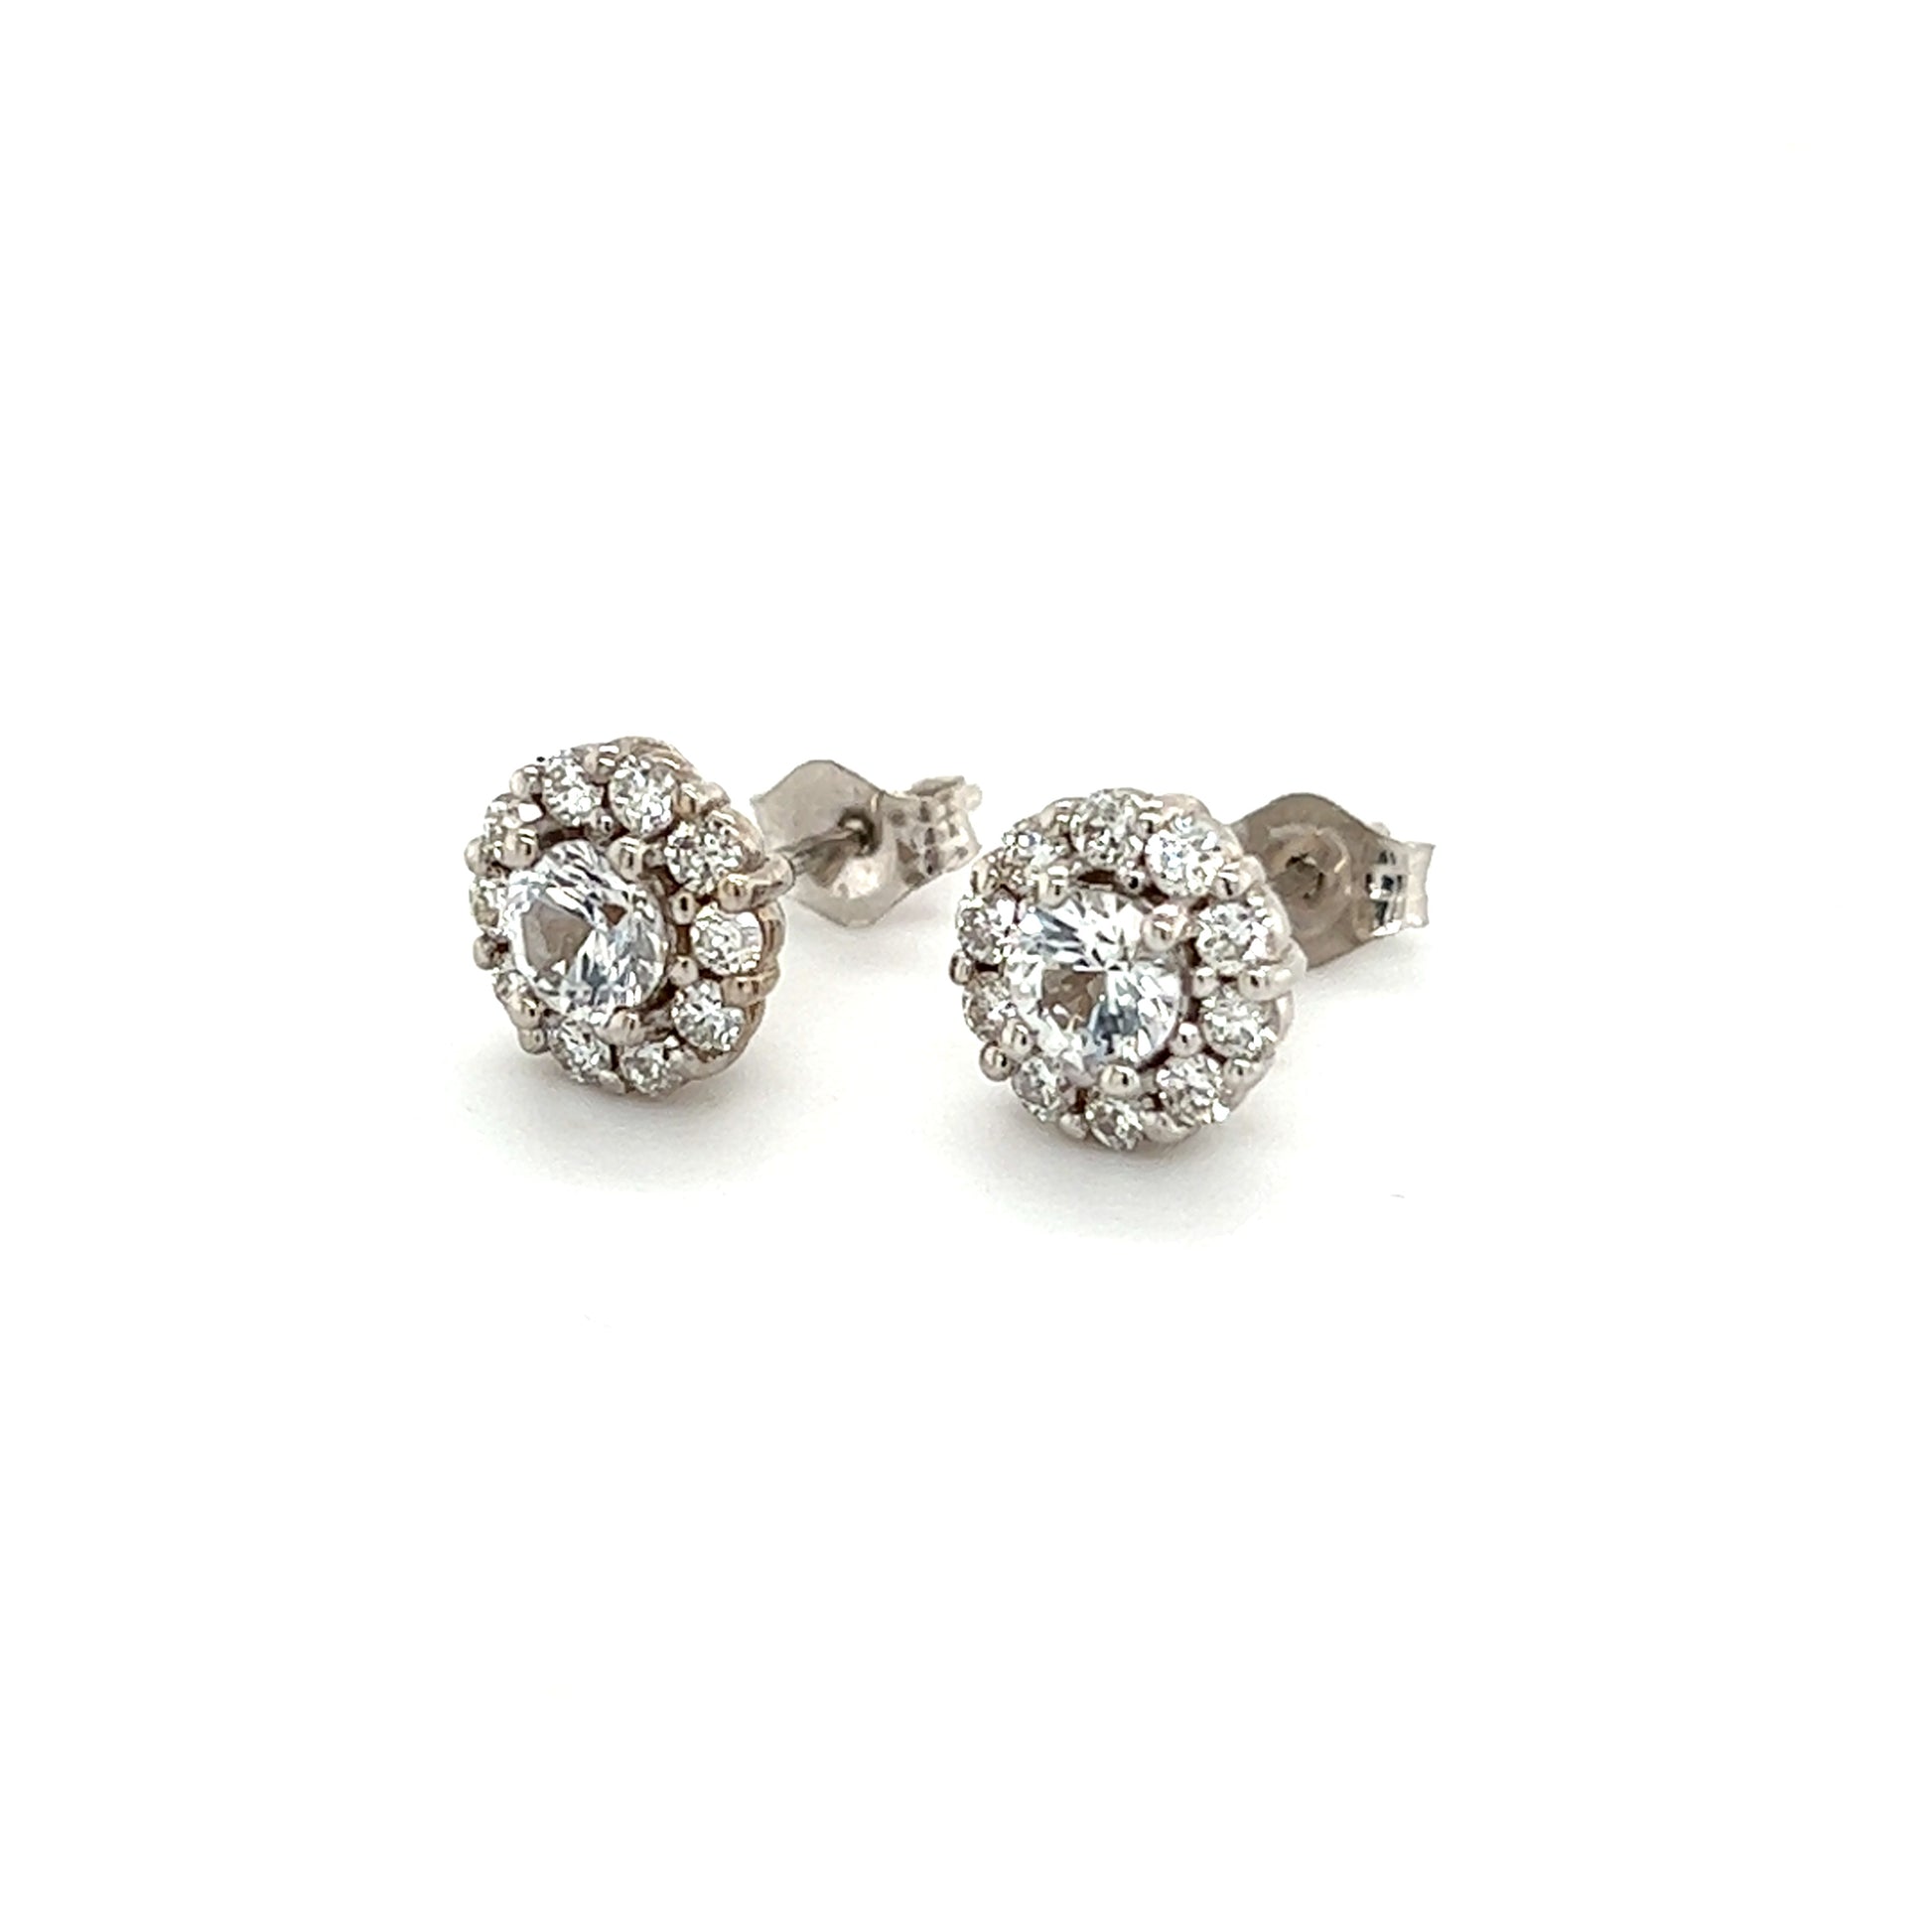 Natural Sapphire Diamond Earrings 14k Gold 1.25 TCW Certified $3,950 215096 - Certified Fine Jewelry